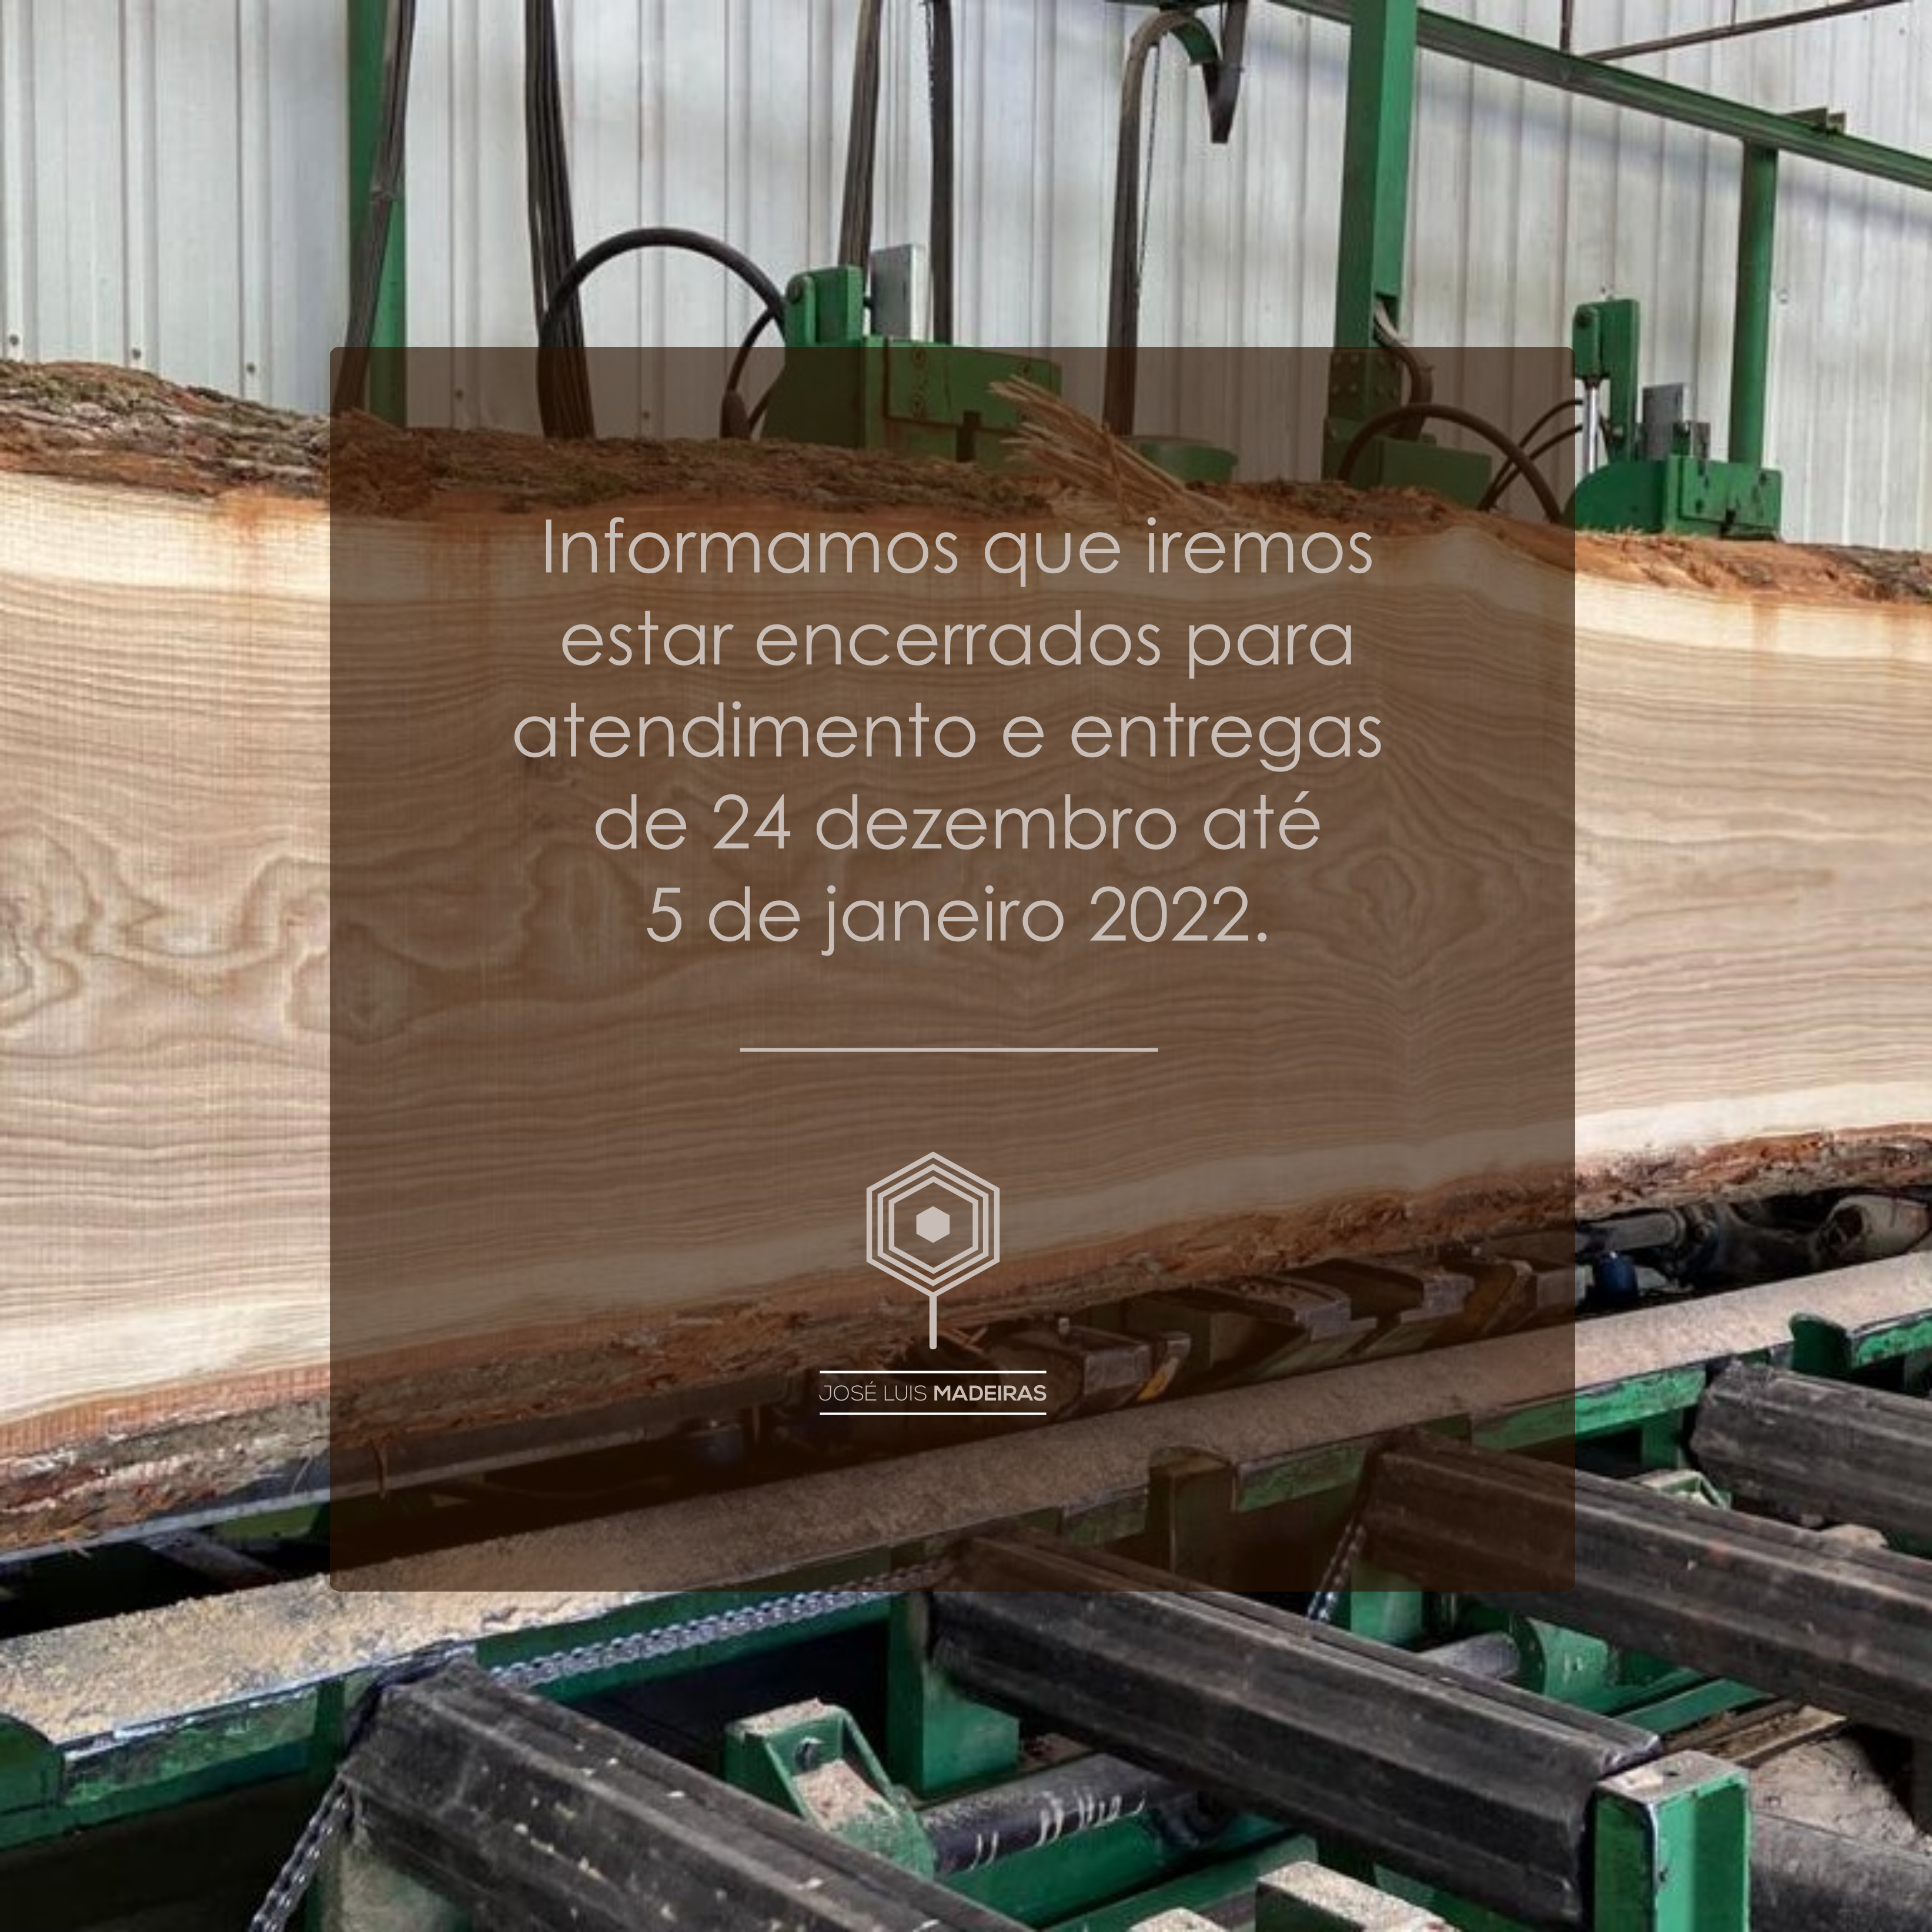 José Luís Madeiras - Transformação e comercialização de madeiras